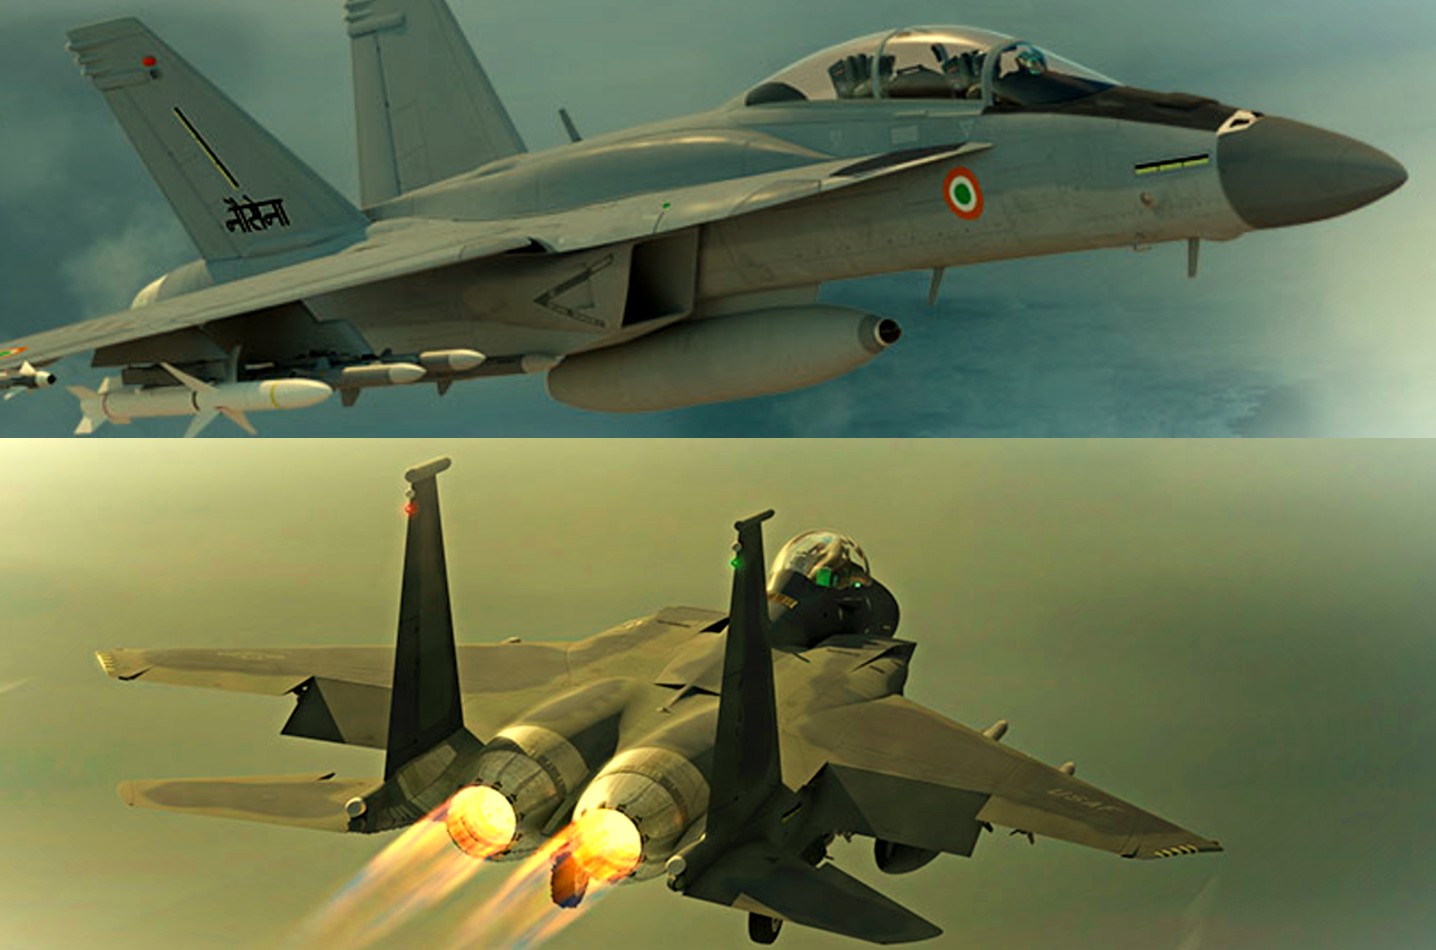 Boeing S India Plans Sharpen Around F 15 Super Hornet Livefist